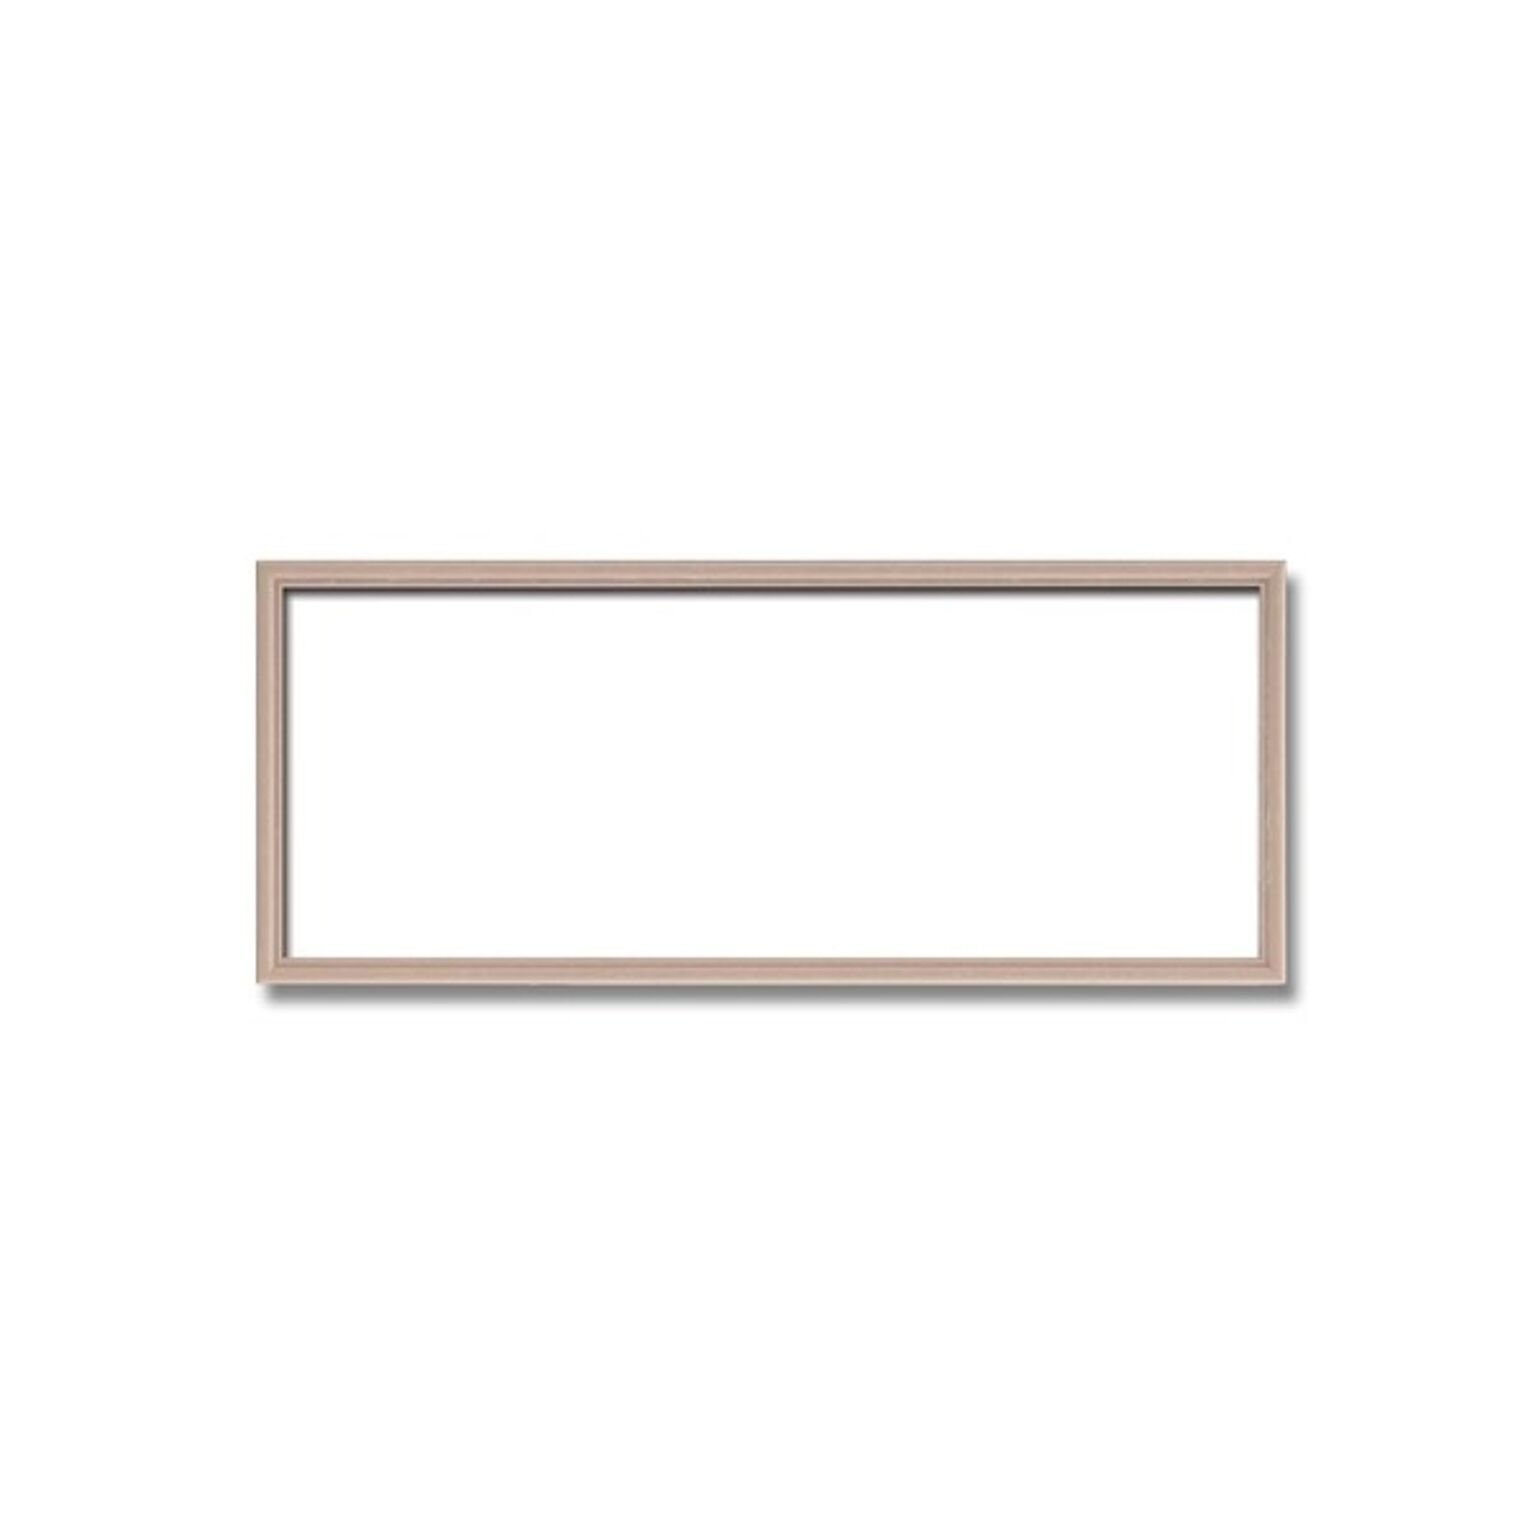 【長方形額】木製額 縦横兼用額 カラー4色展開 ■カラー長方形額（450×200mm） ピンクベージュ